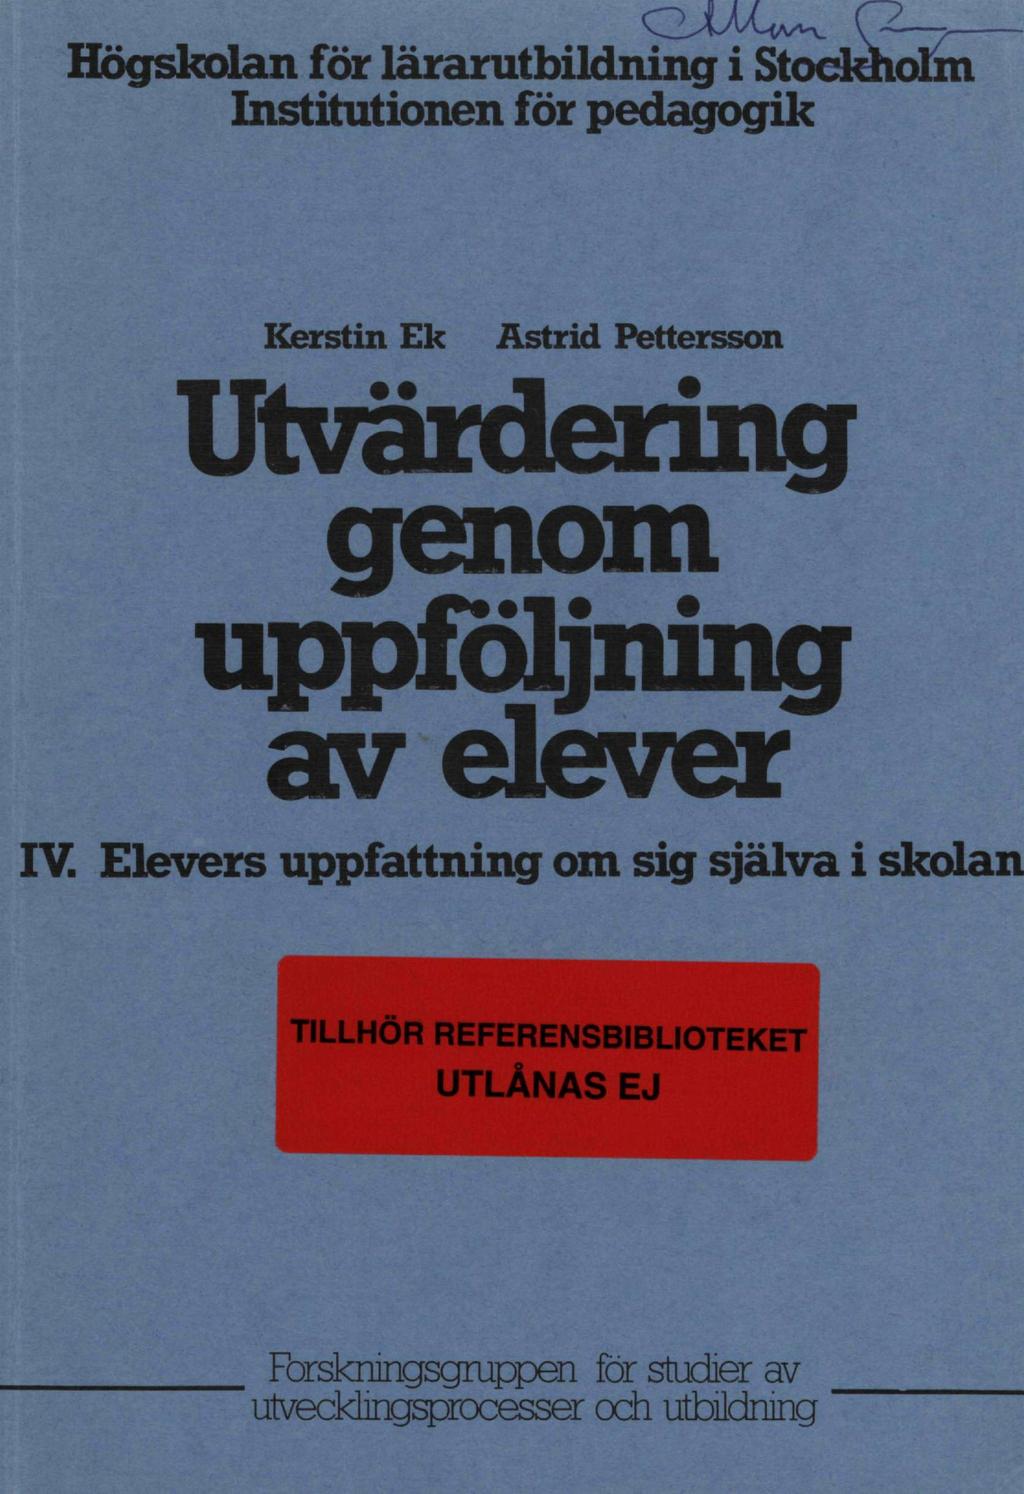 Högskolan för lärarutbildning i Stockholm Institutionen för pedagogik Kerstin Ek Astrid ettersson Utvärdering genom uppföljning av elever IV.